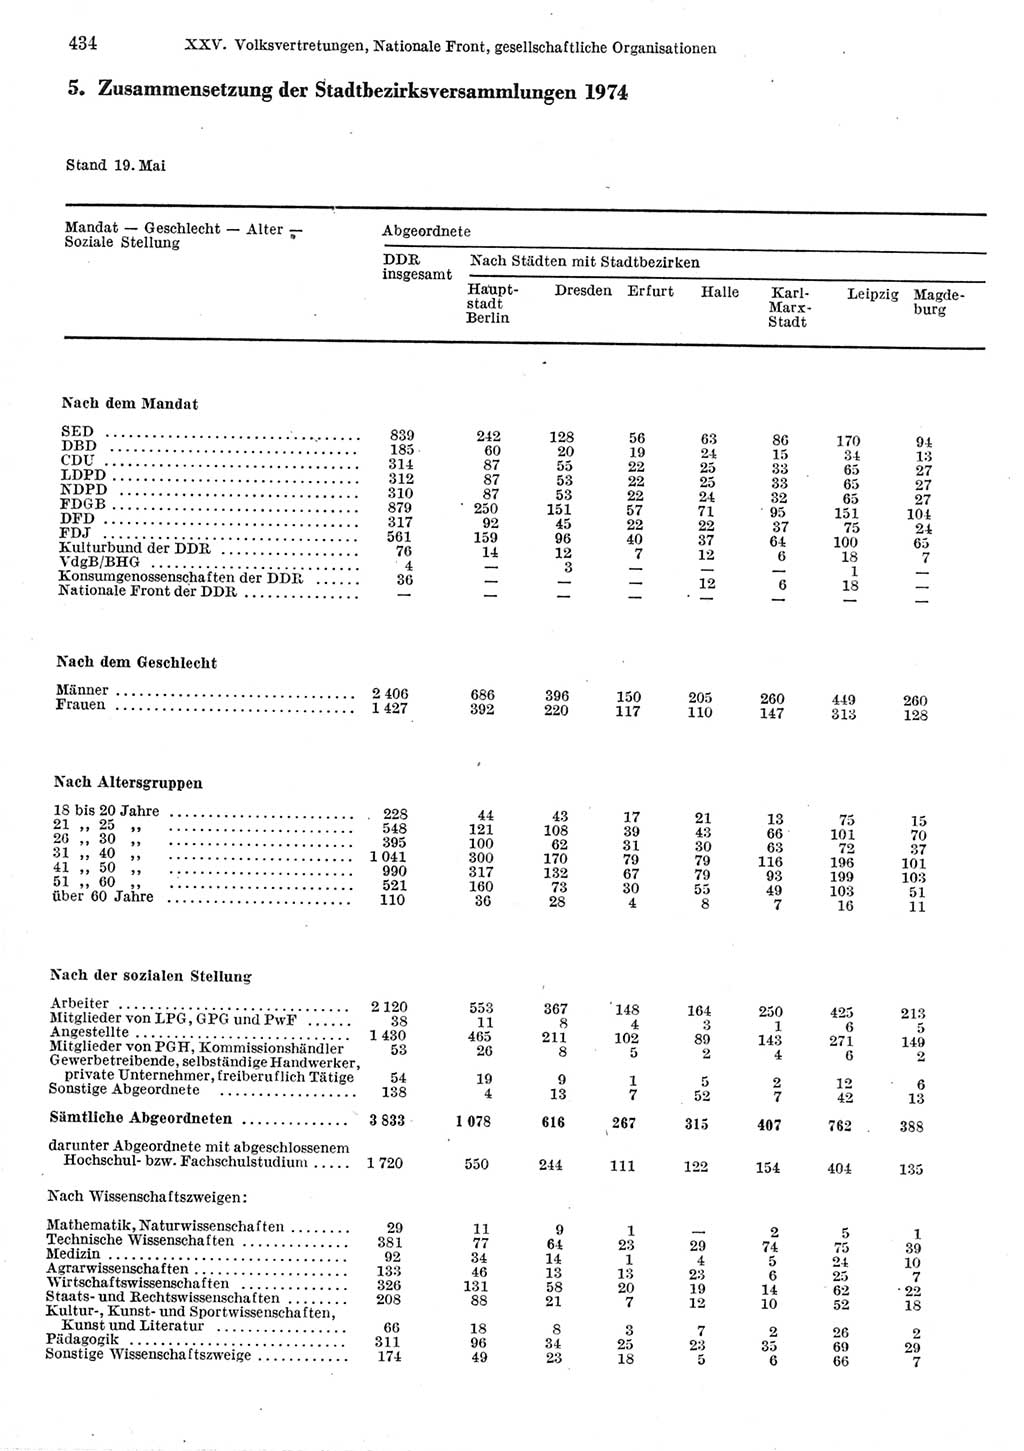 Statistisches Jahrbuch der Deutschen Demokratischen Republik (DDR) 1977, Seite 434 (Stat. Jb. DDR 1977, S. 434)